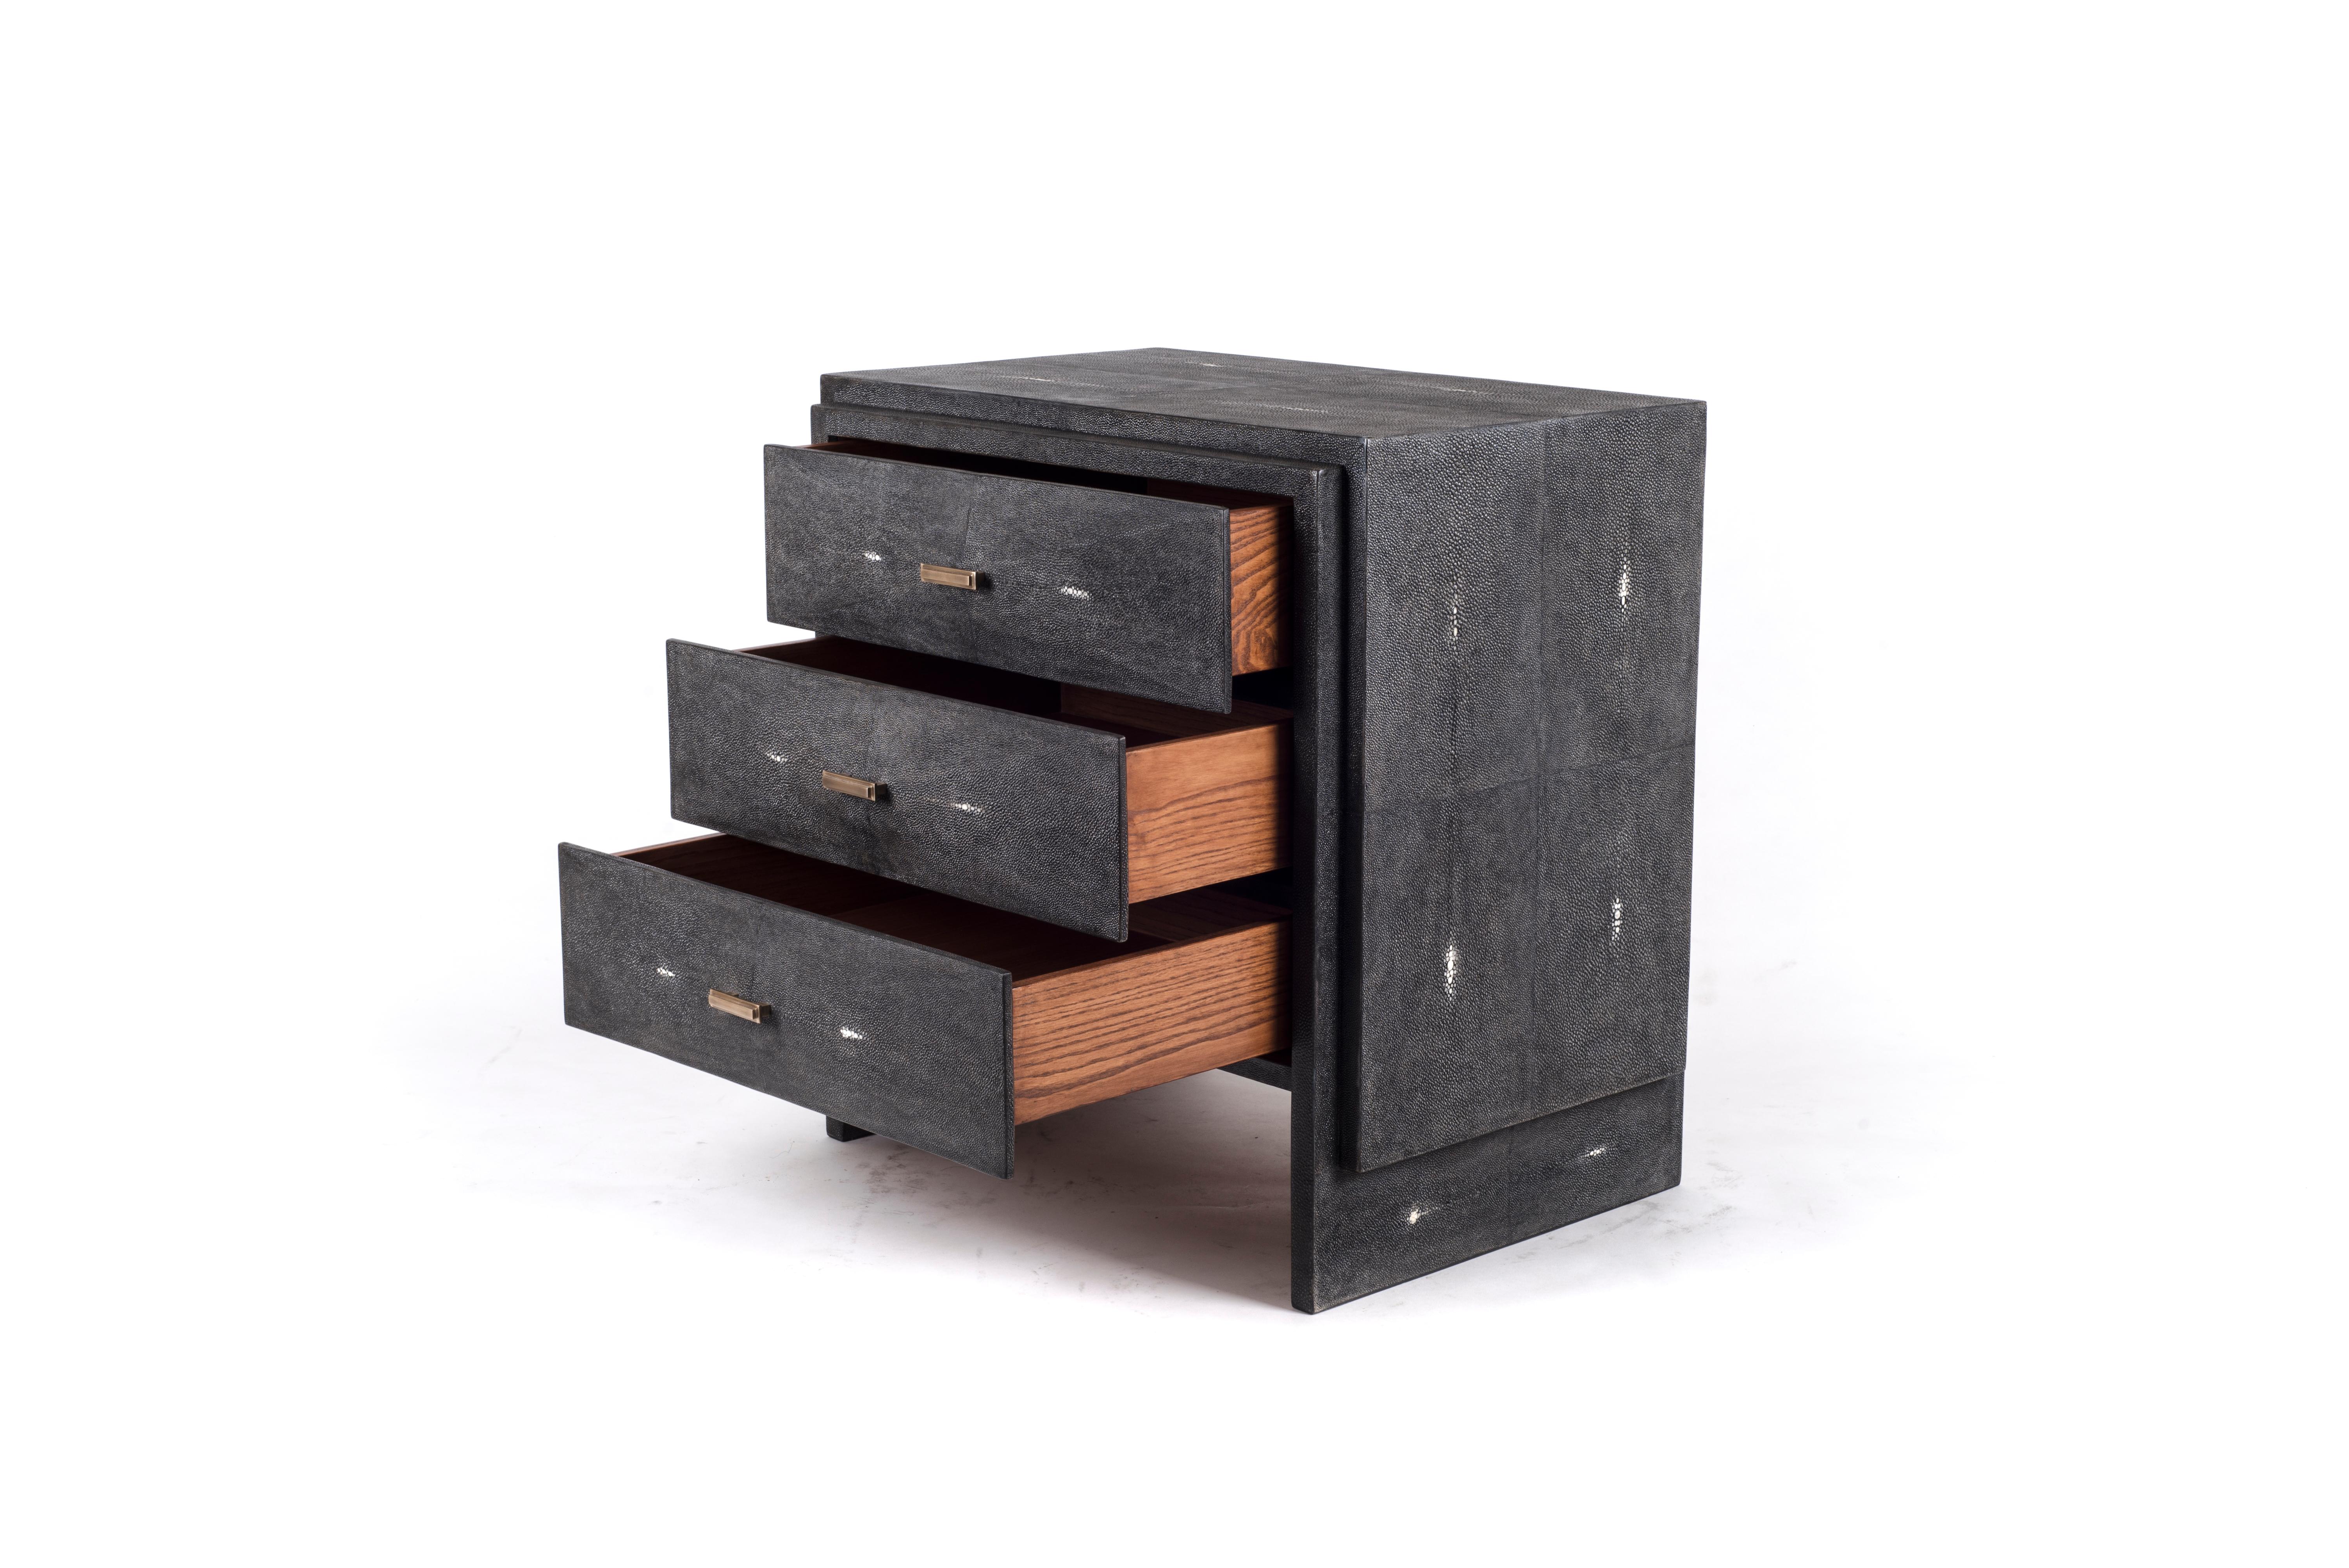 Le chevet iconique de R&Y Augousti est l'une de leurs premières créations. Une table de chevet classique et fonctionnelle, avec une géométrie subtile sur les tiroirs biseautés. Cette table de chevet est entièrement marquetée en galuchat noir avec de